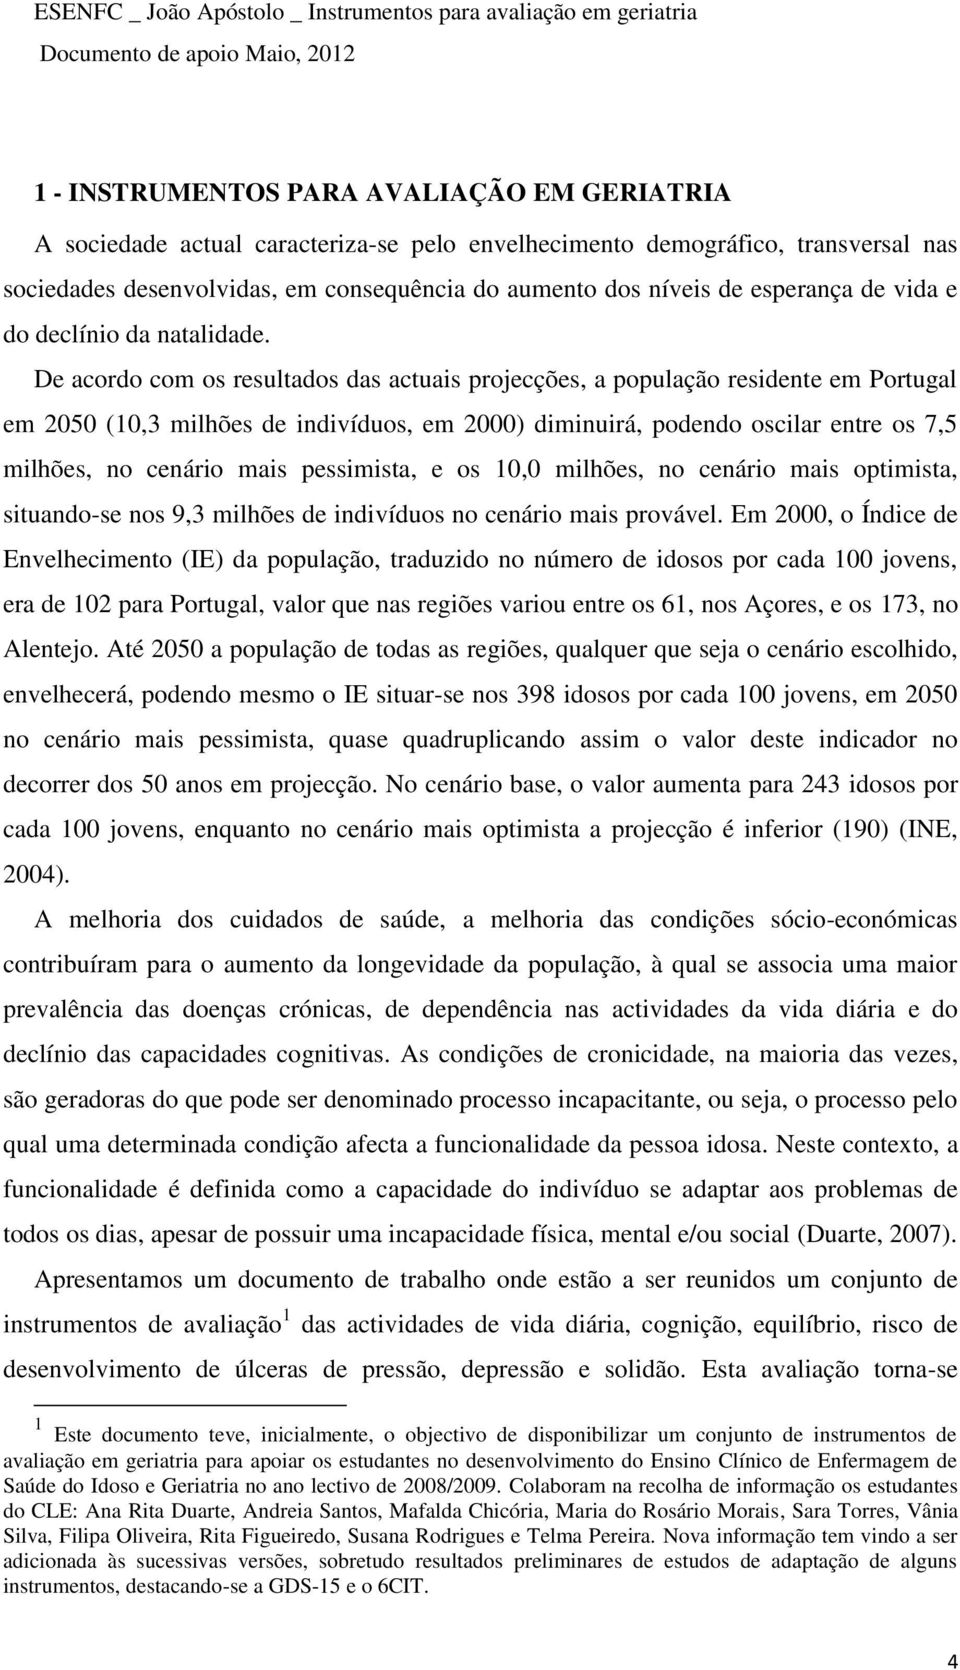 De acordo com os resultados das actuais projecções, a população residente em Portugal em 2050 (10,3 milhões de indivíduos, em 2000) diminuirá, podendo oscilar entre os 7,5 milhões, no cenário mais